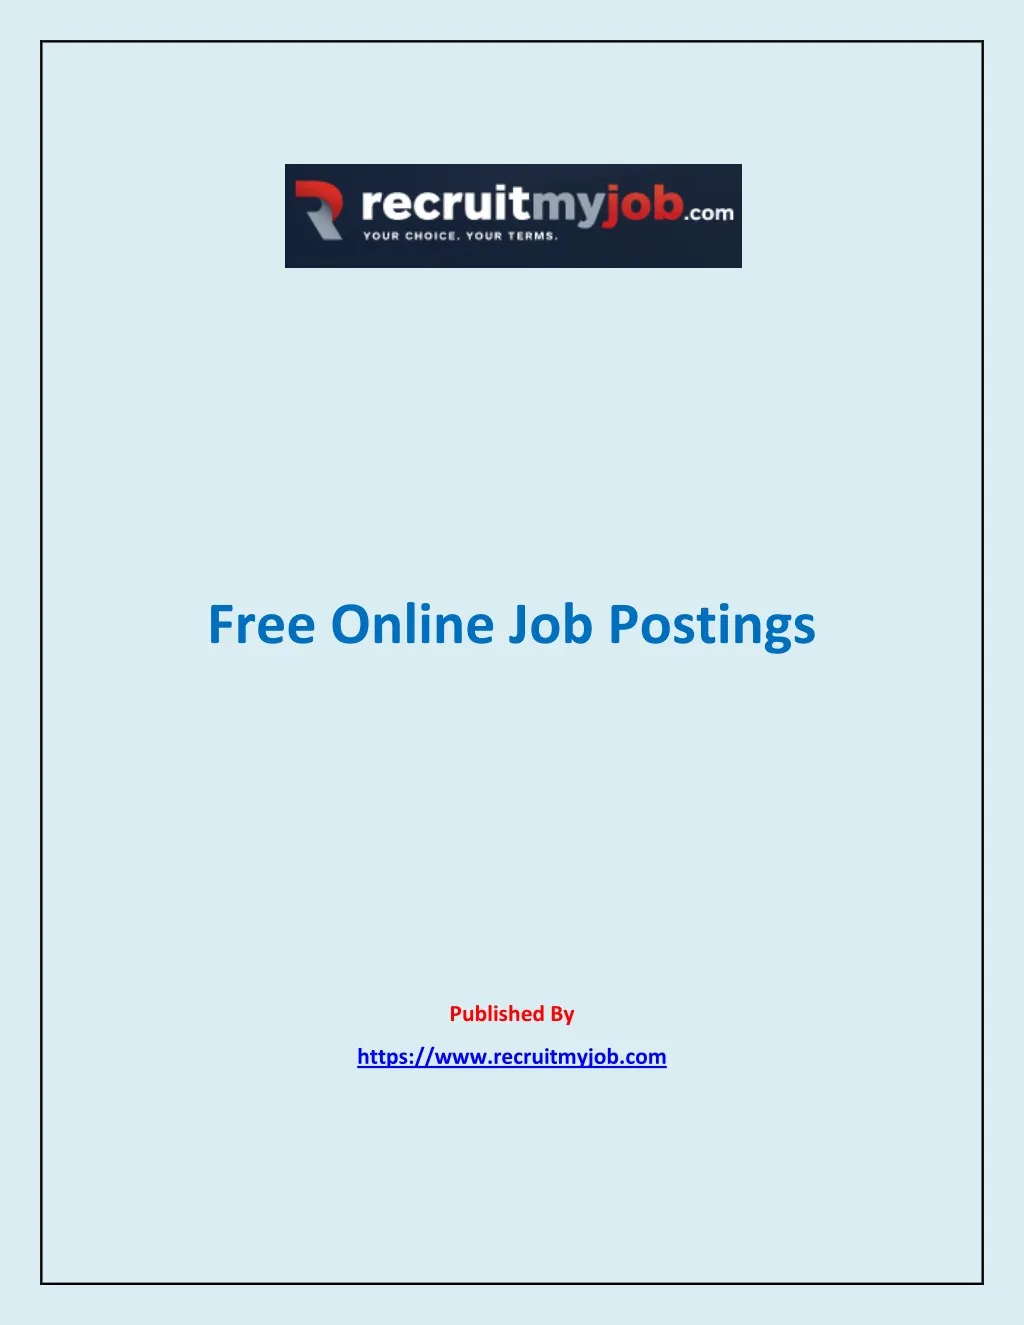 free online job postings